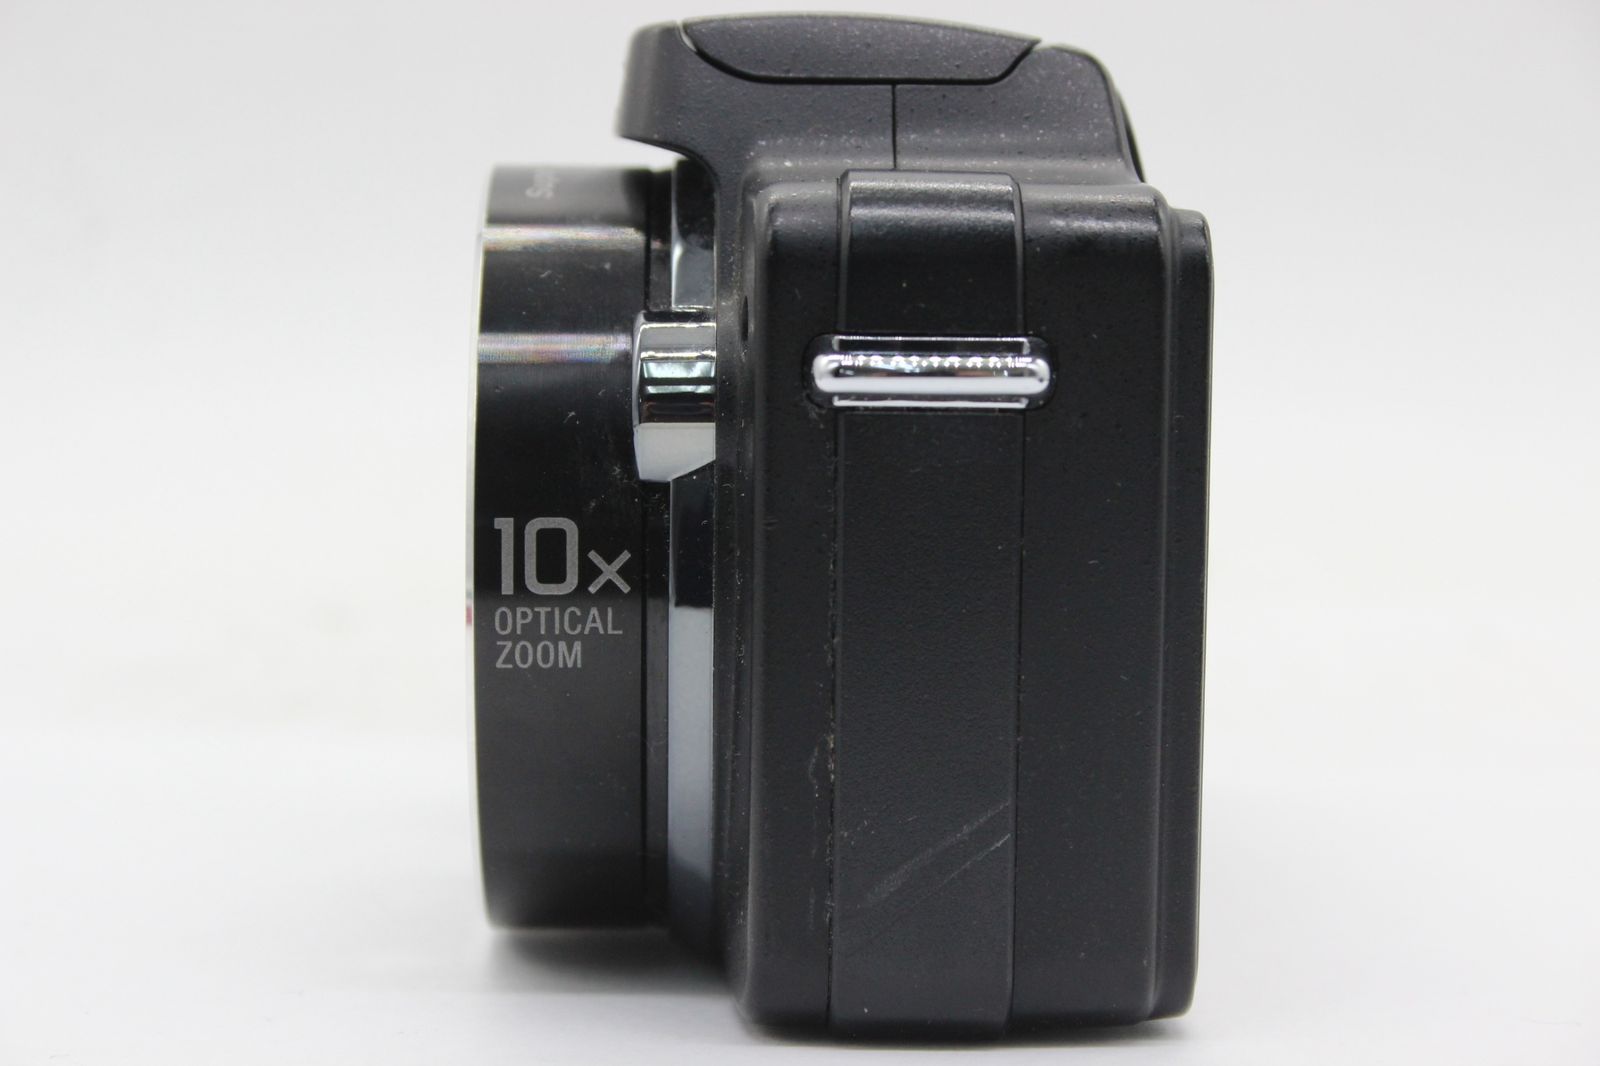 返品保証】 ソニー SONY Cyber-shot DSC-H10 ブラック 10x バッテリー付き コンパクトデジタルカメラ s9593 - メルカリ